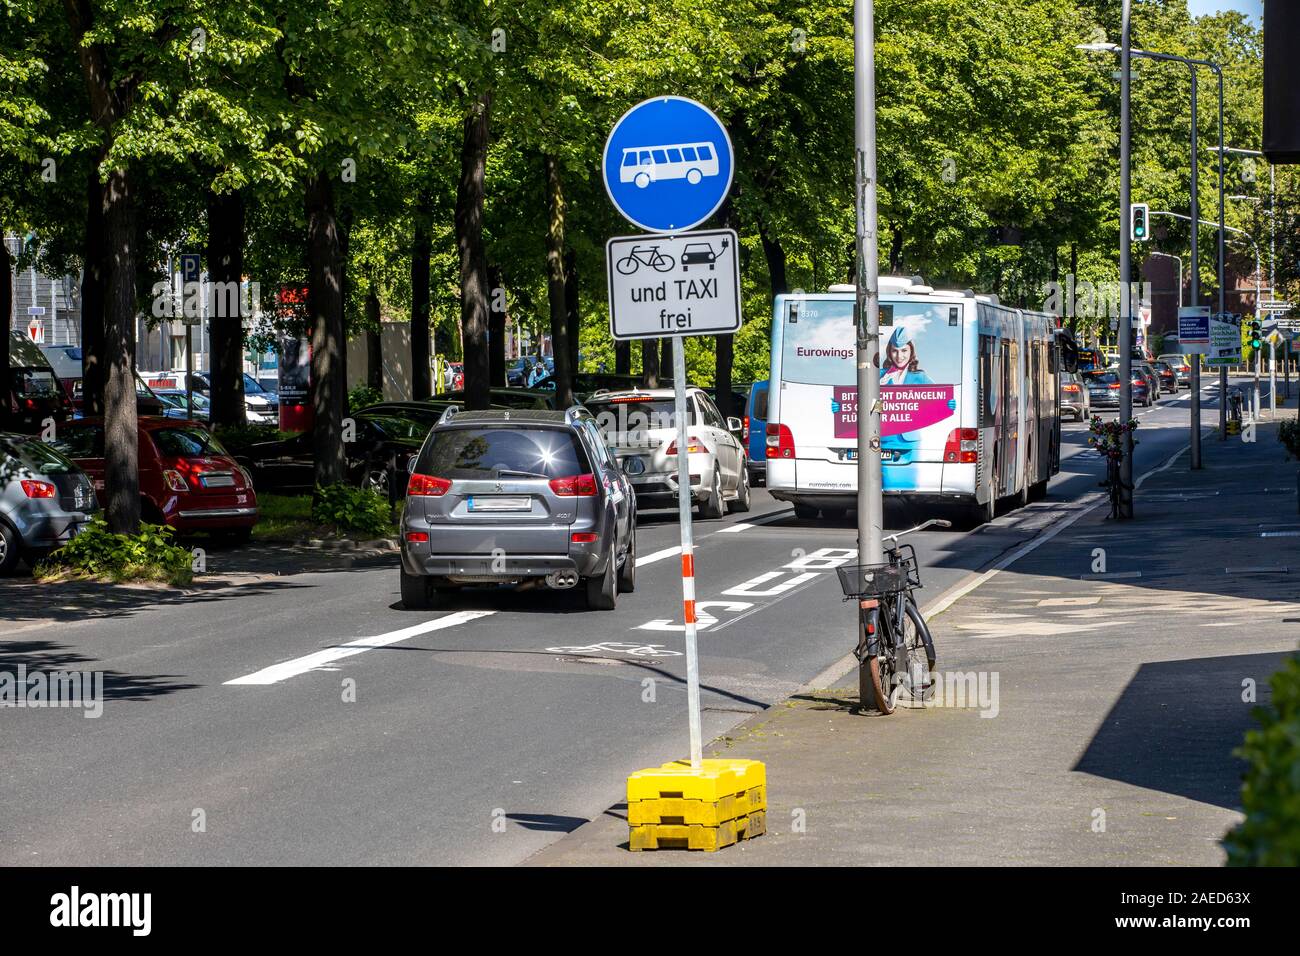 Düsseldorf, ambientales lane Prinz-Georg-Strasse, en el distrito de Pempelfort, sólo taxis, ciclistas, autobuses y e-cars se les permite conducir en t Foto de stock